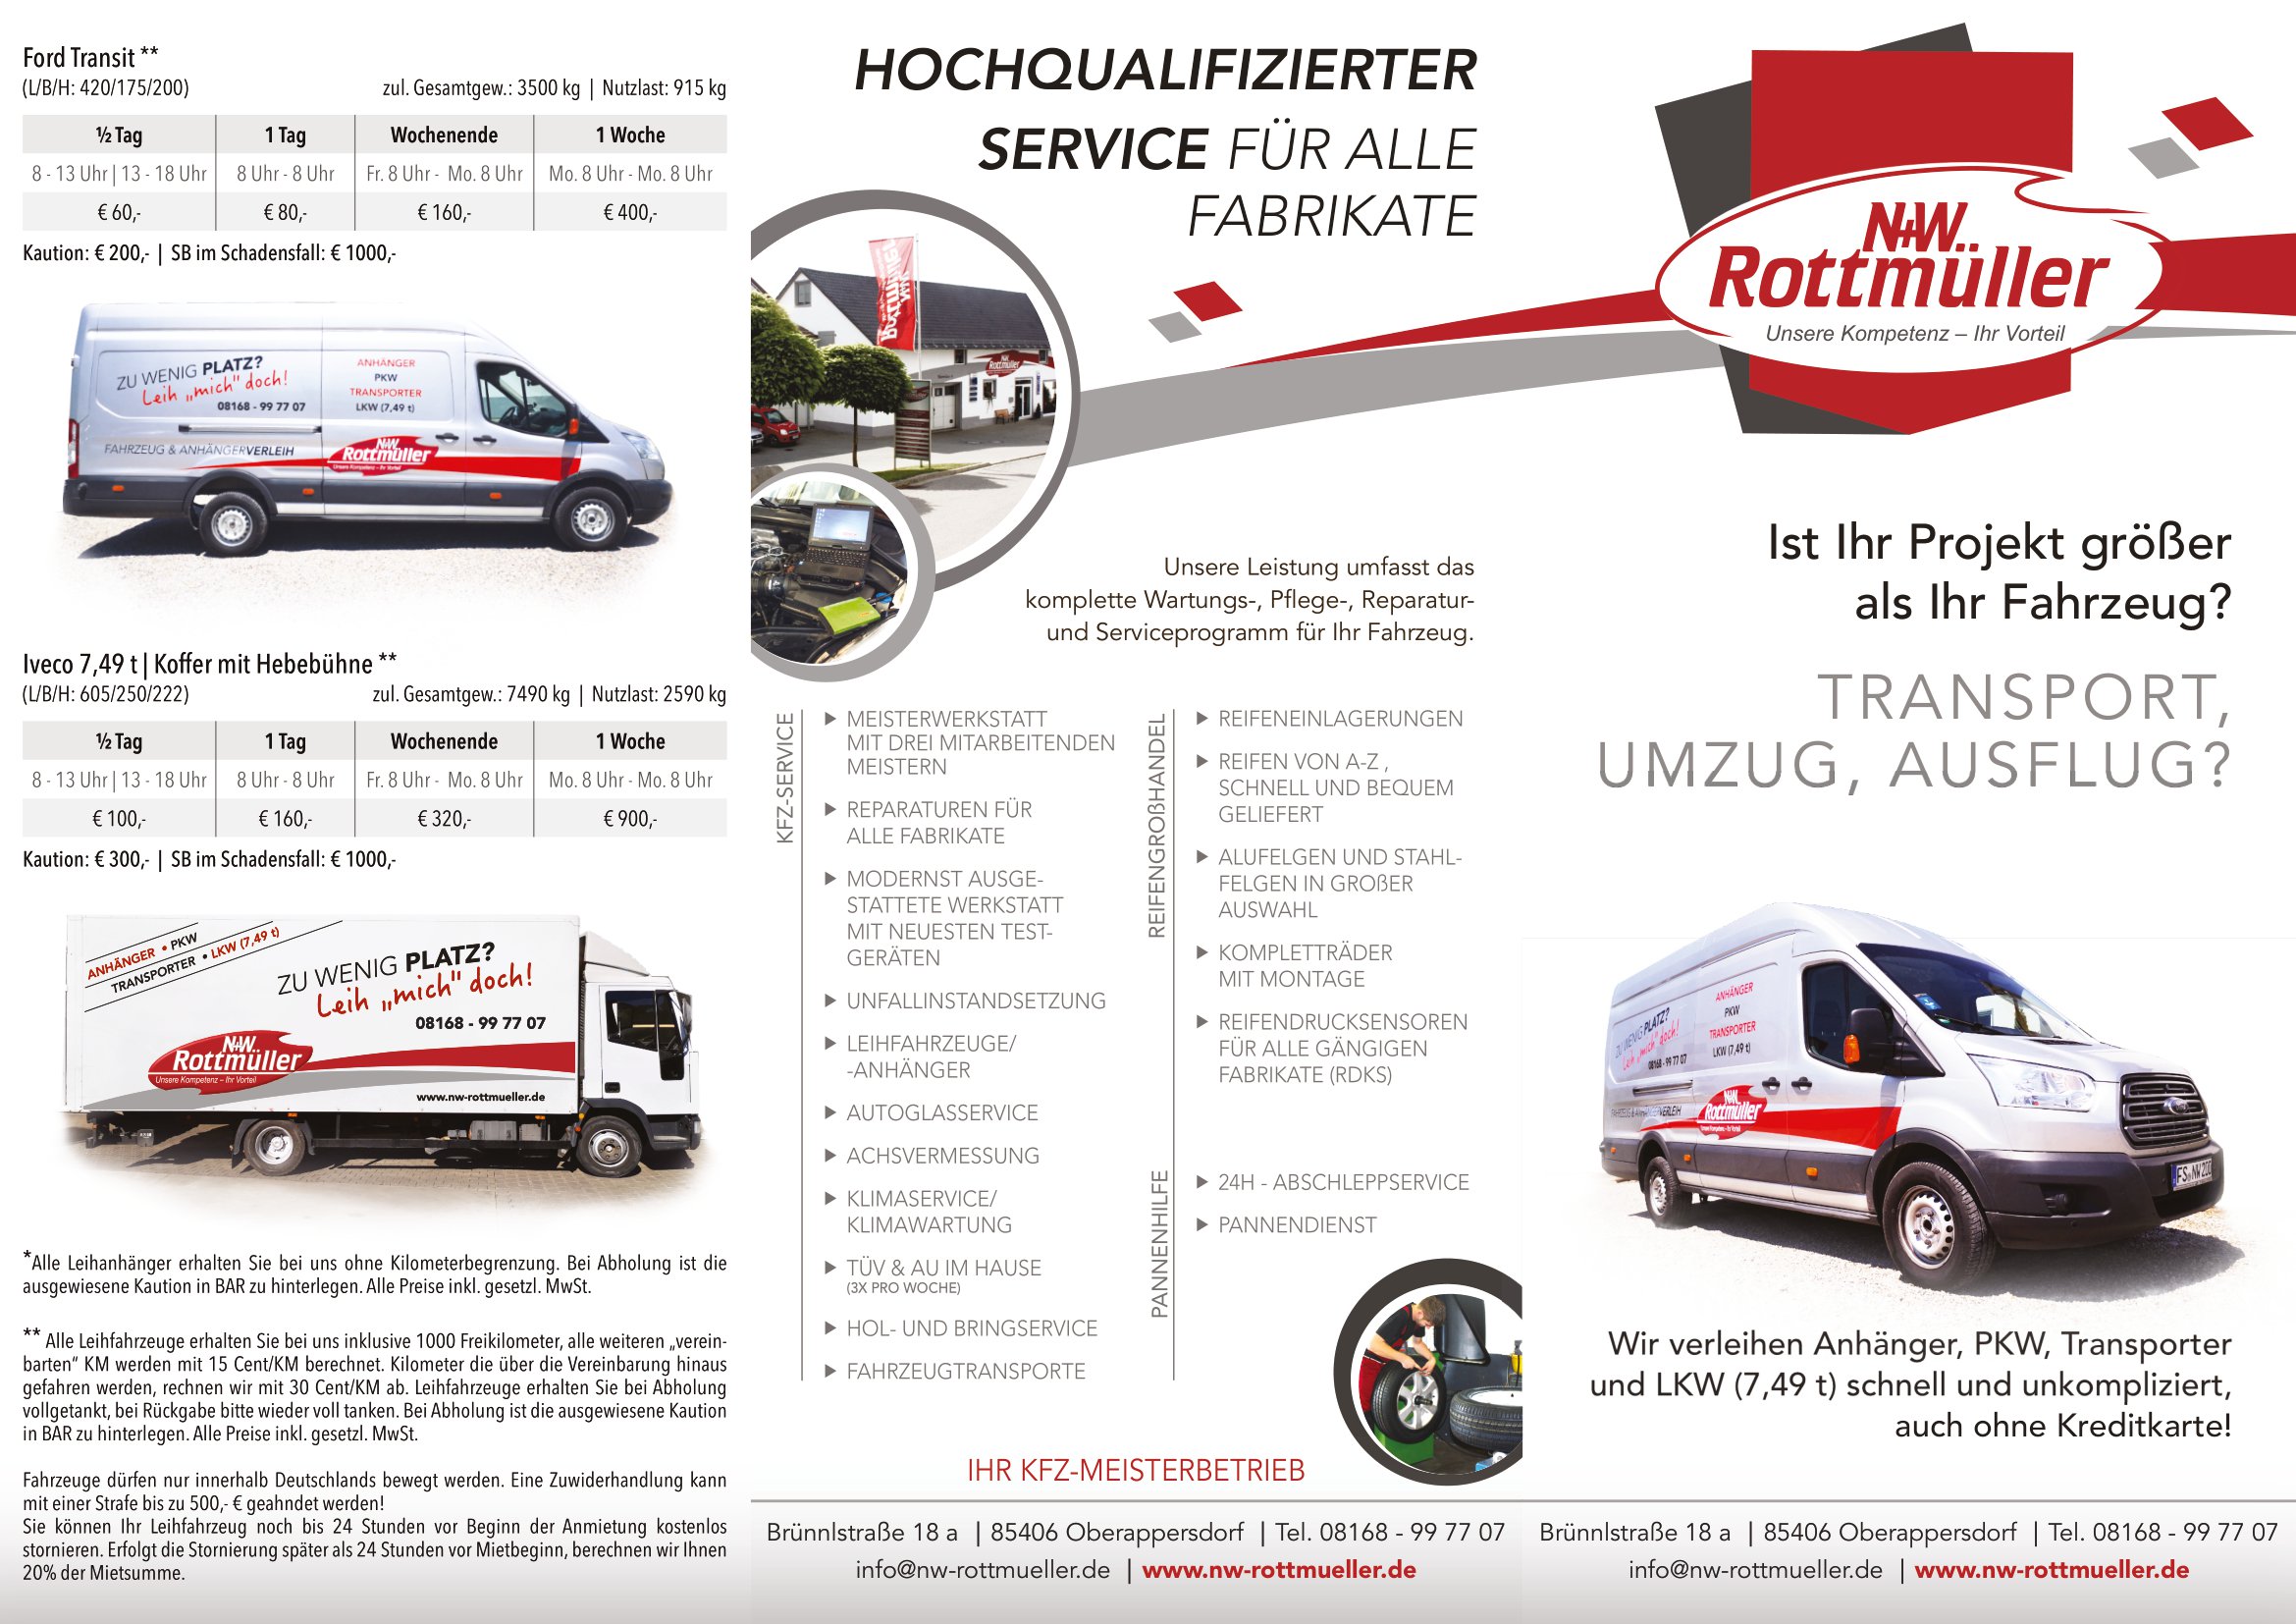 Faltflyer_Fahrzeugverleih_05-2023-1.jpg